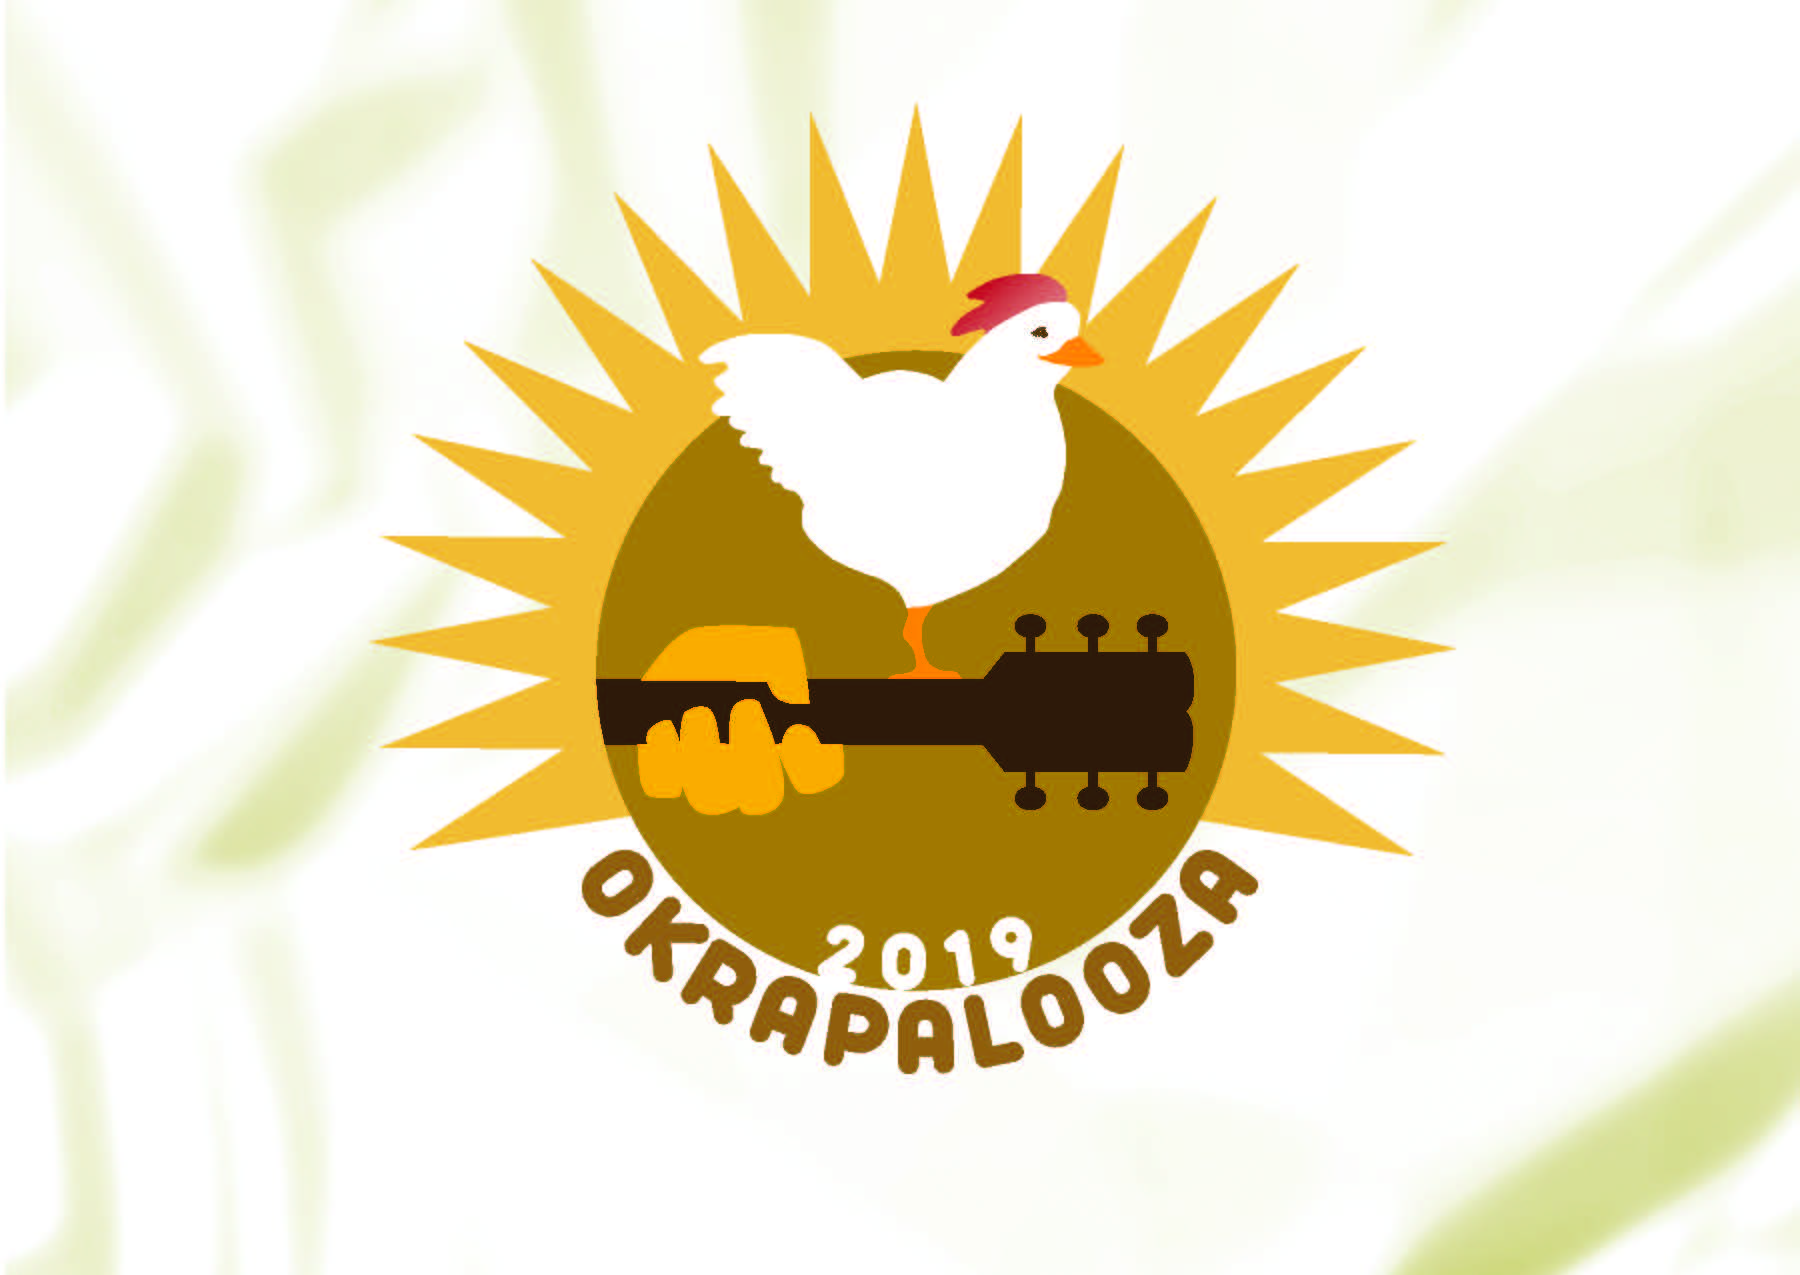 Okrapalooza 2019 logo